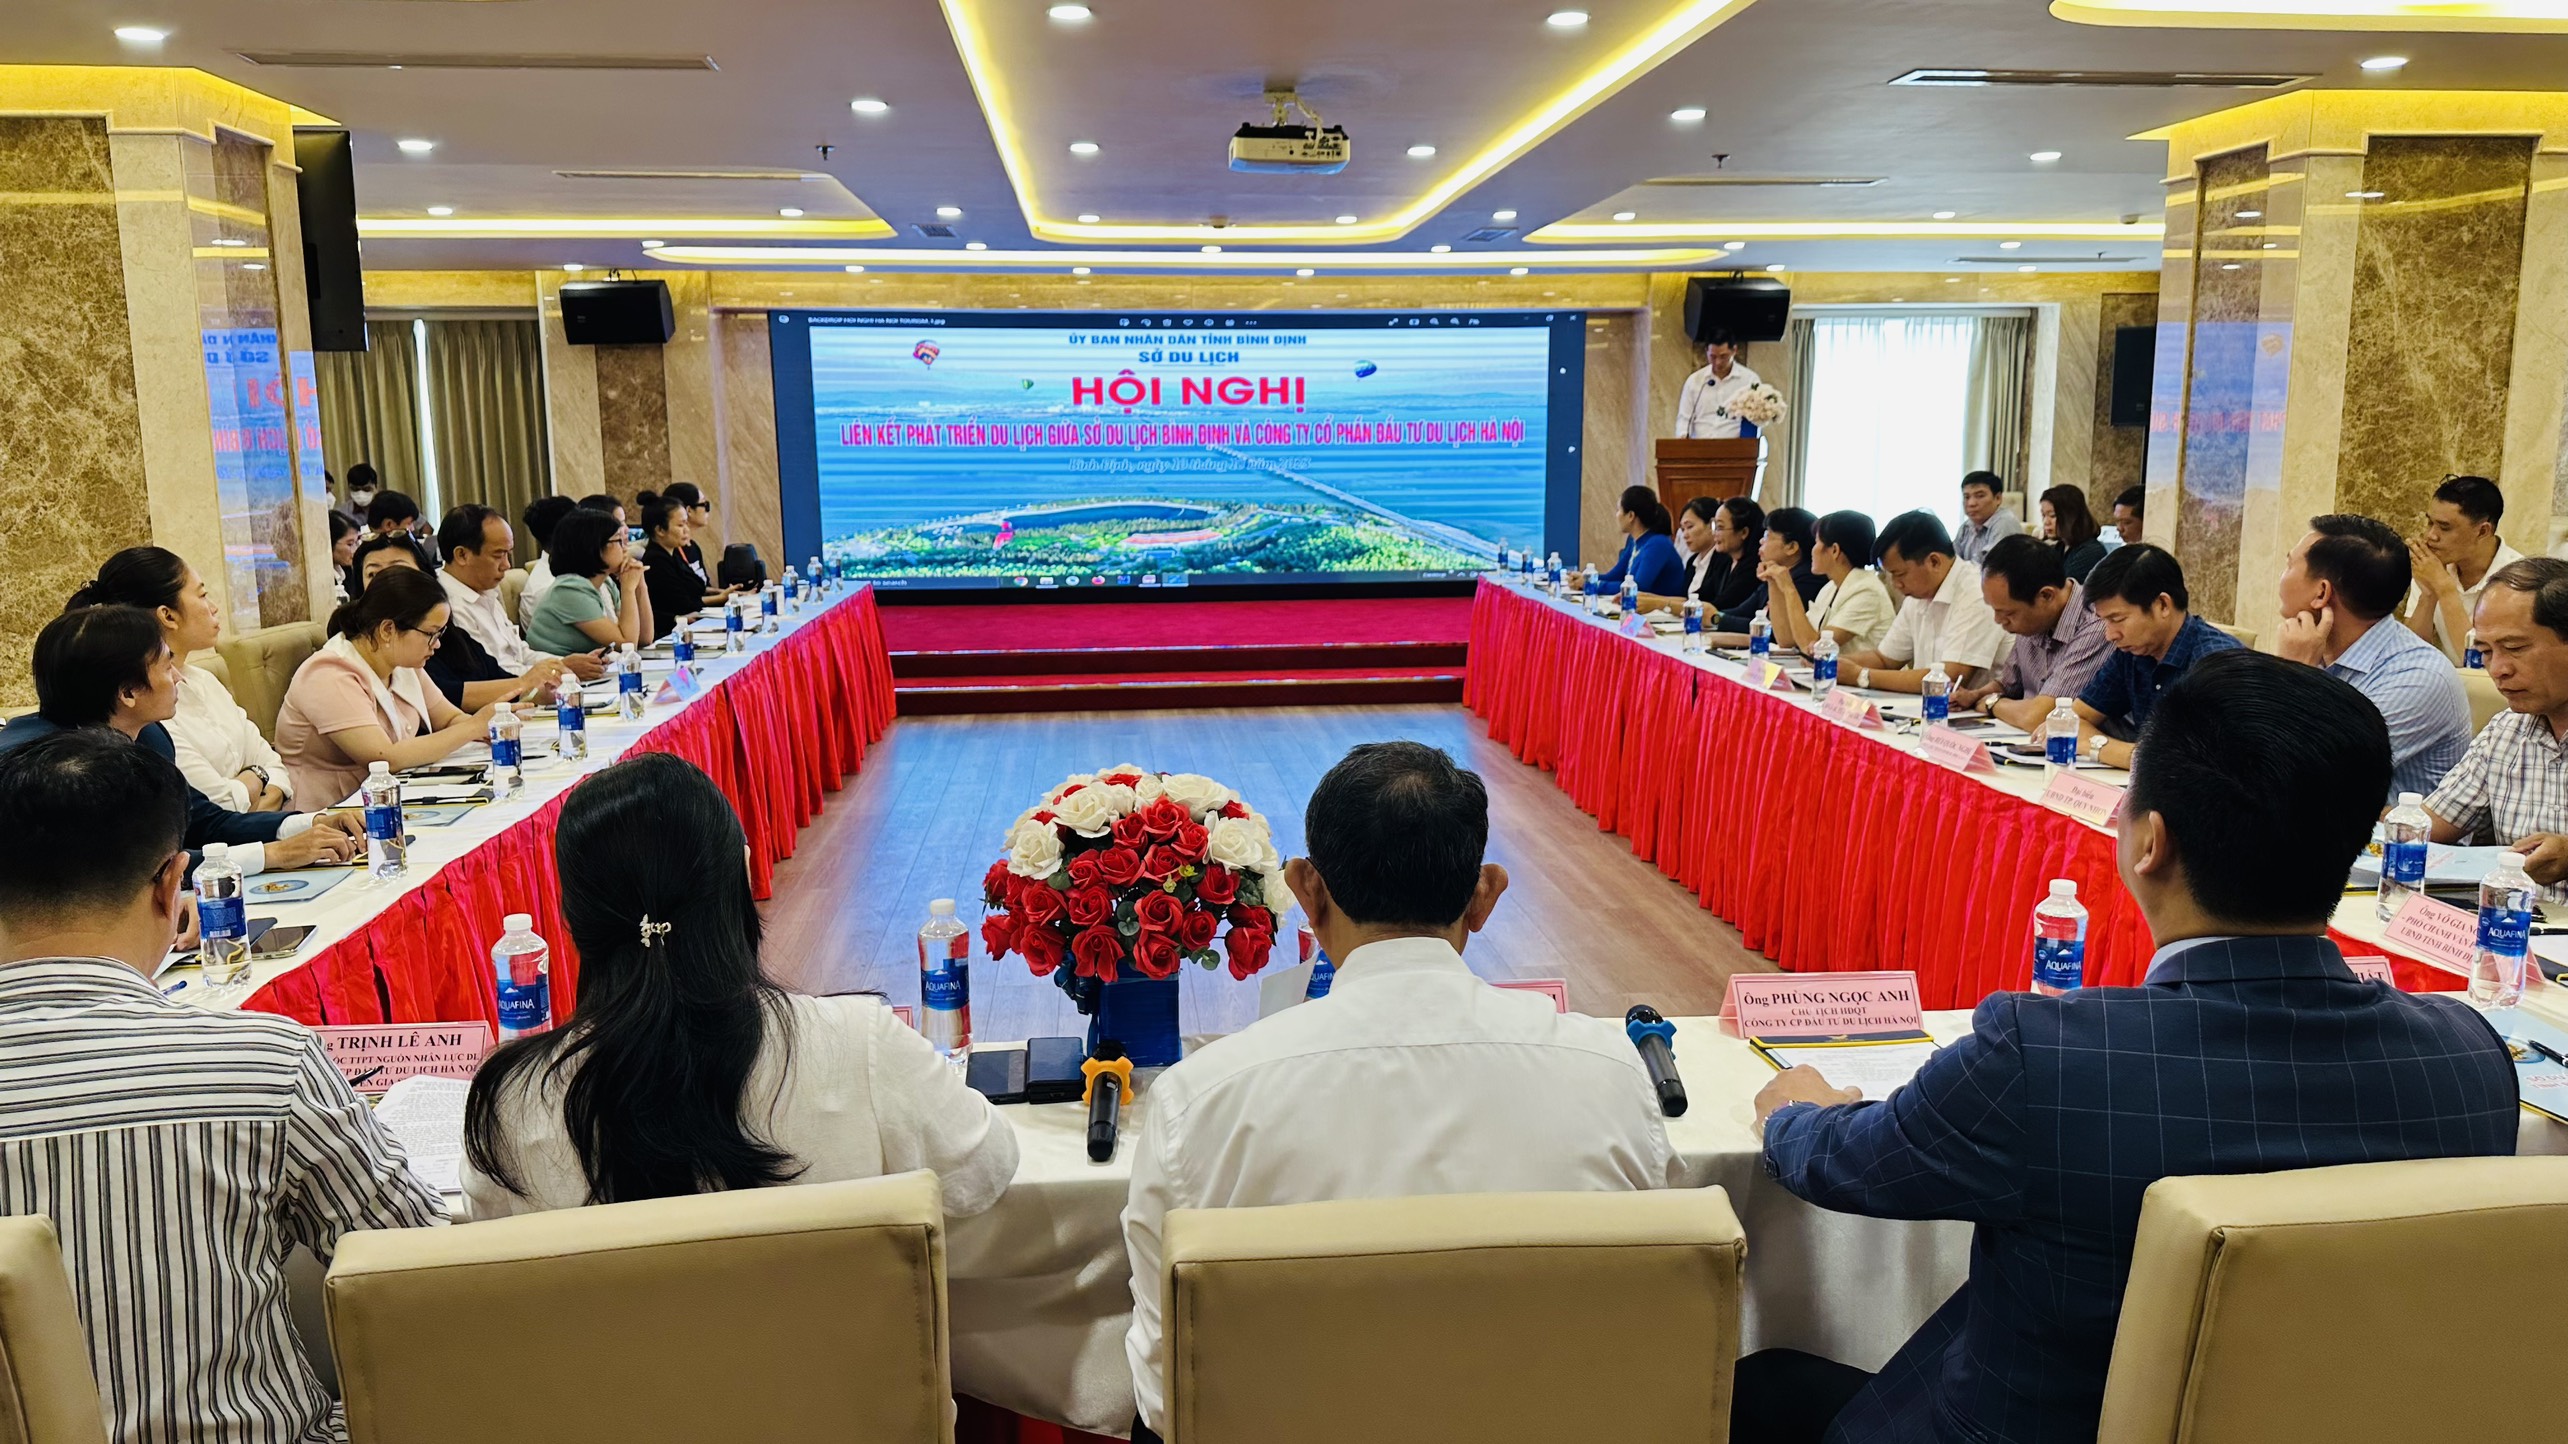 Hội nghị “Liên kết, hợp tác phát triển du lịch giữa Sở Du lịch Bình Định và Công ty Cổ phần Đầu tư Du lịch Hà Nội” tại Bình Định.